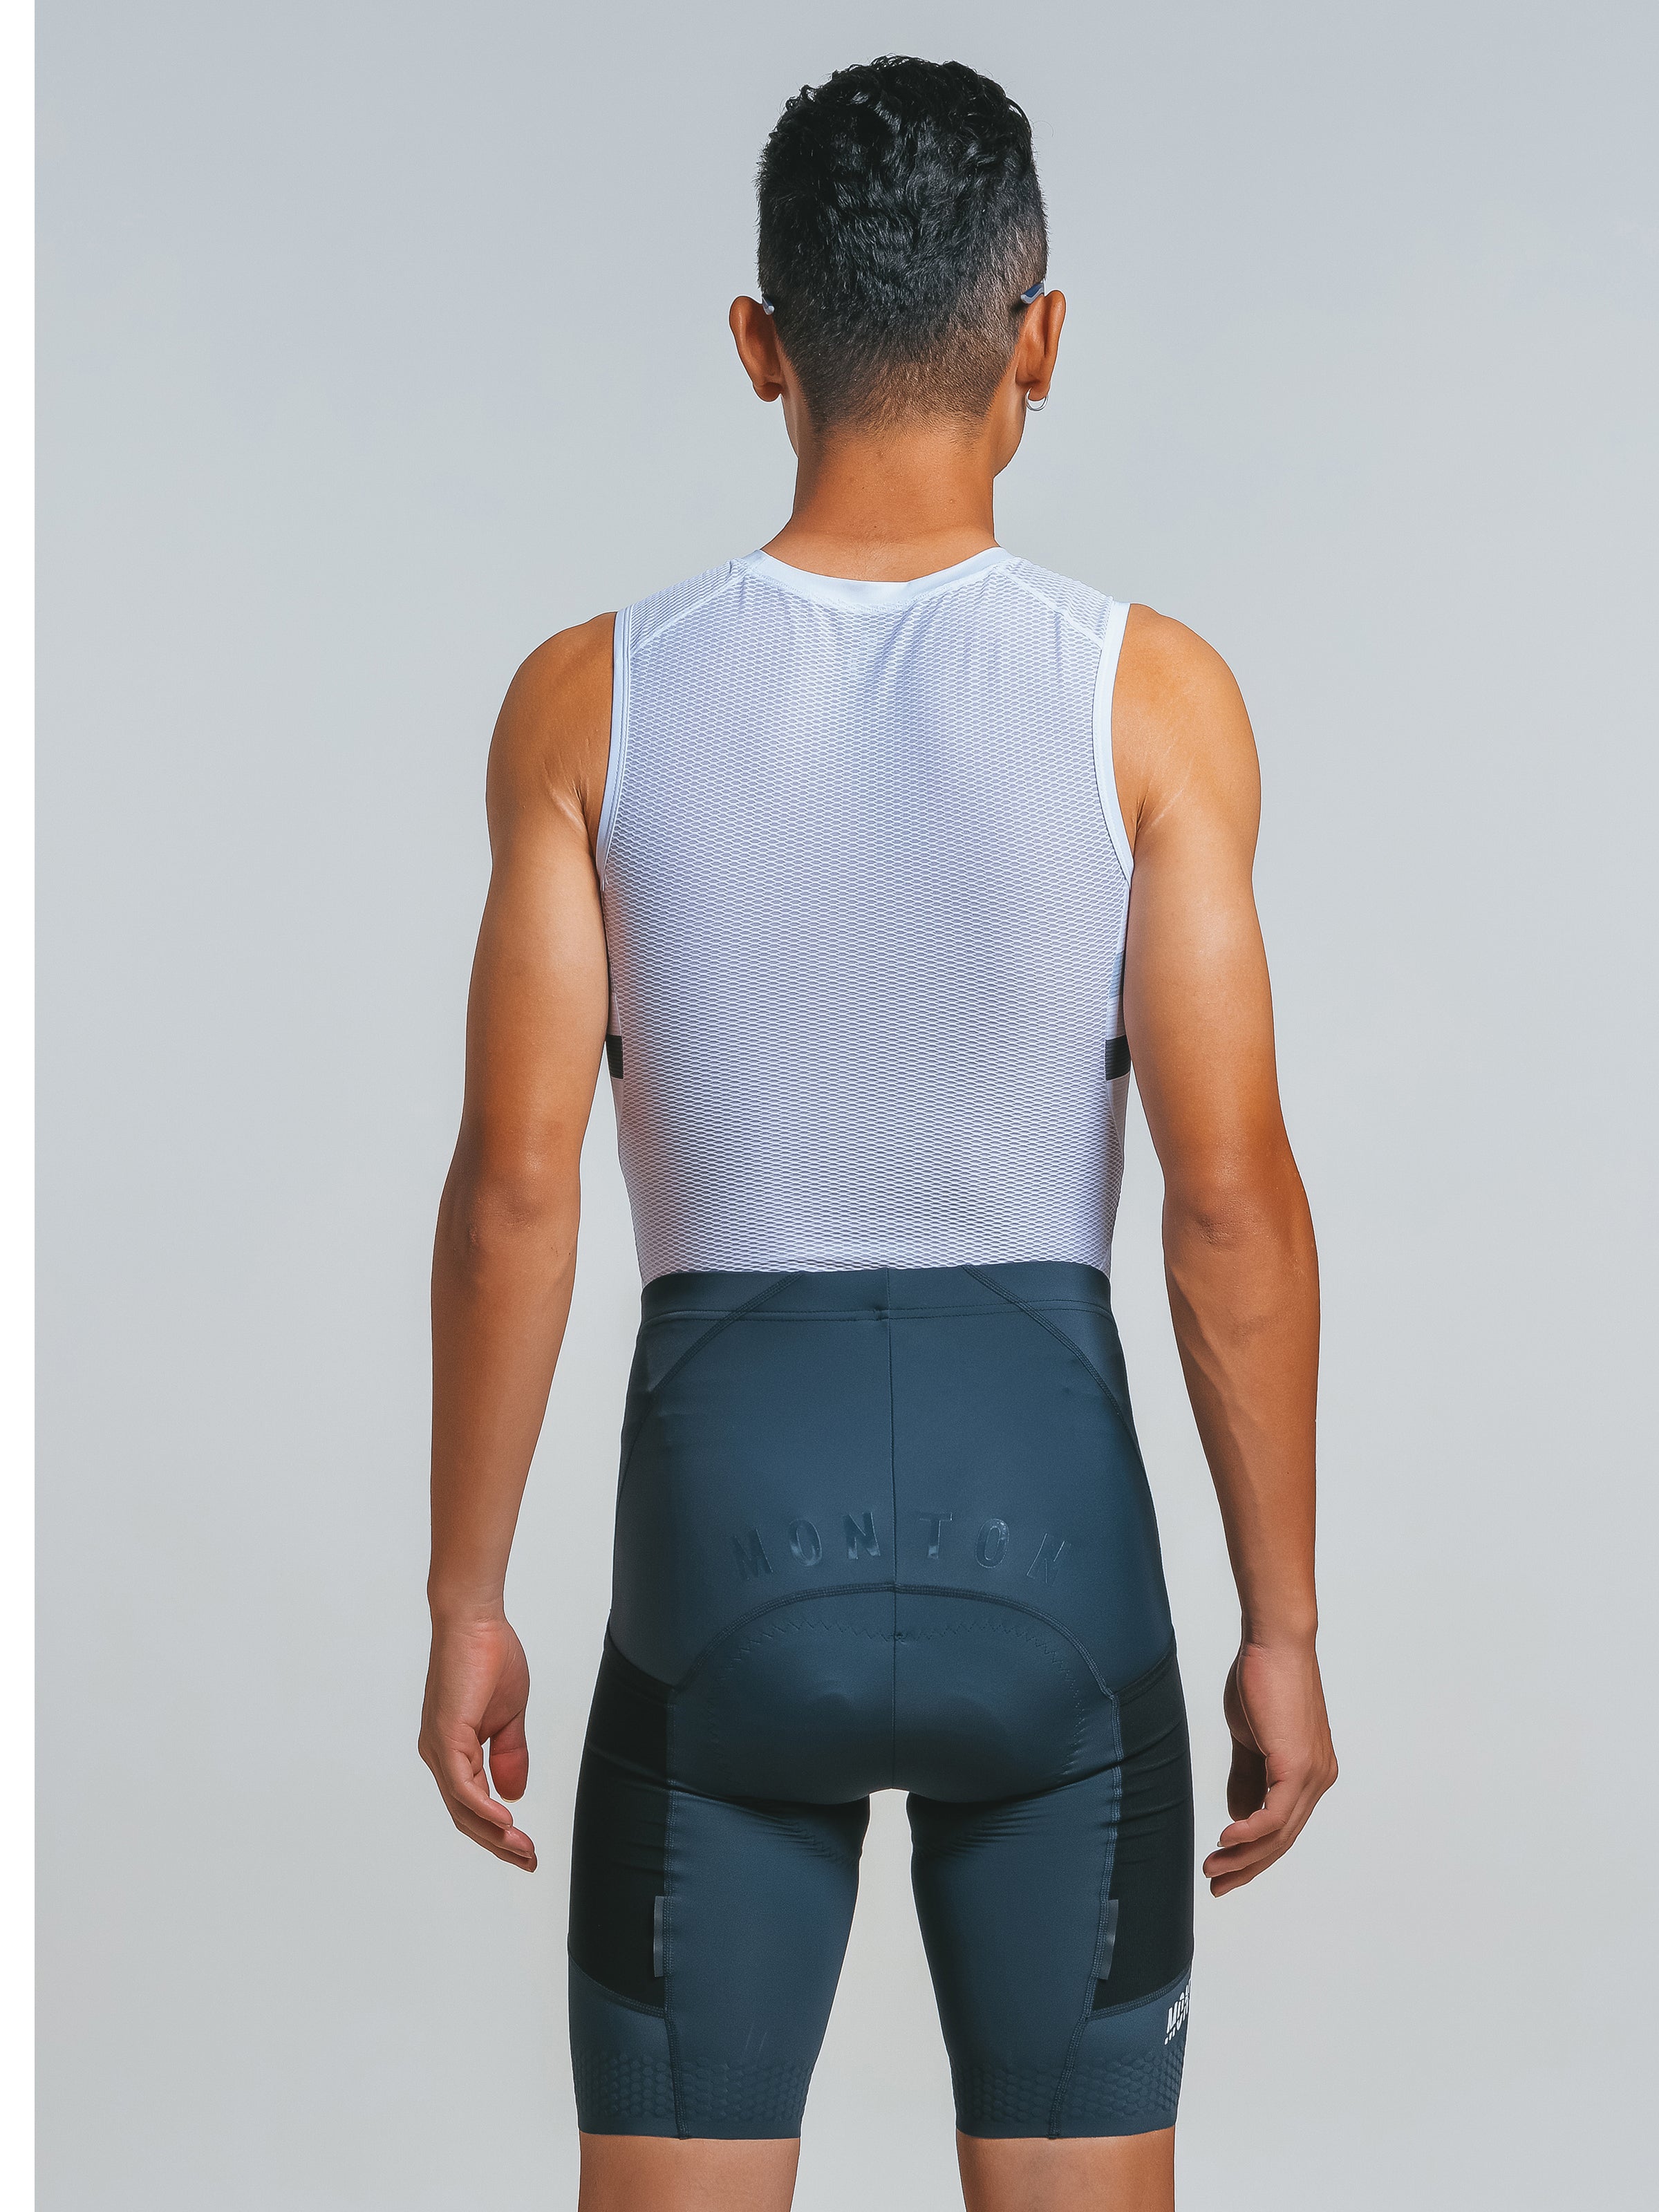 cycling shorts gray